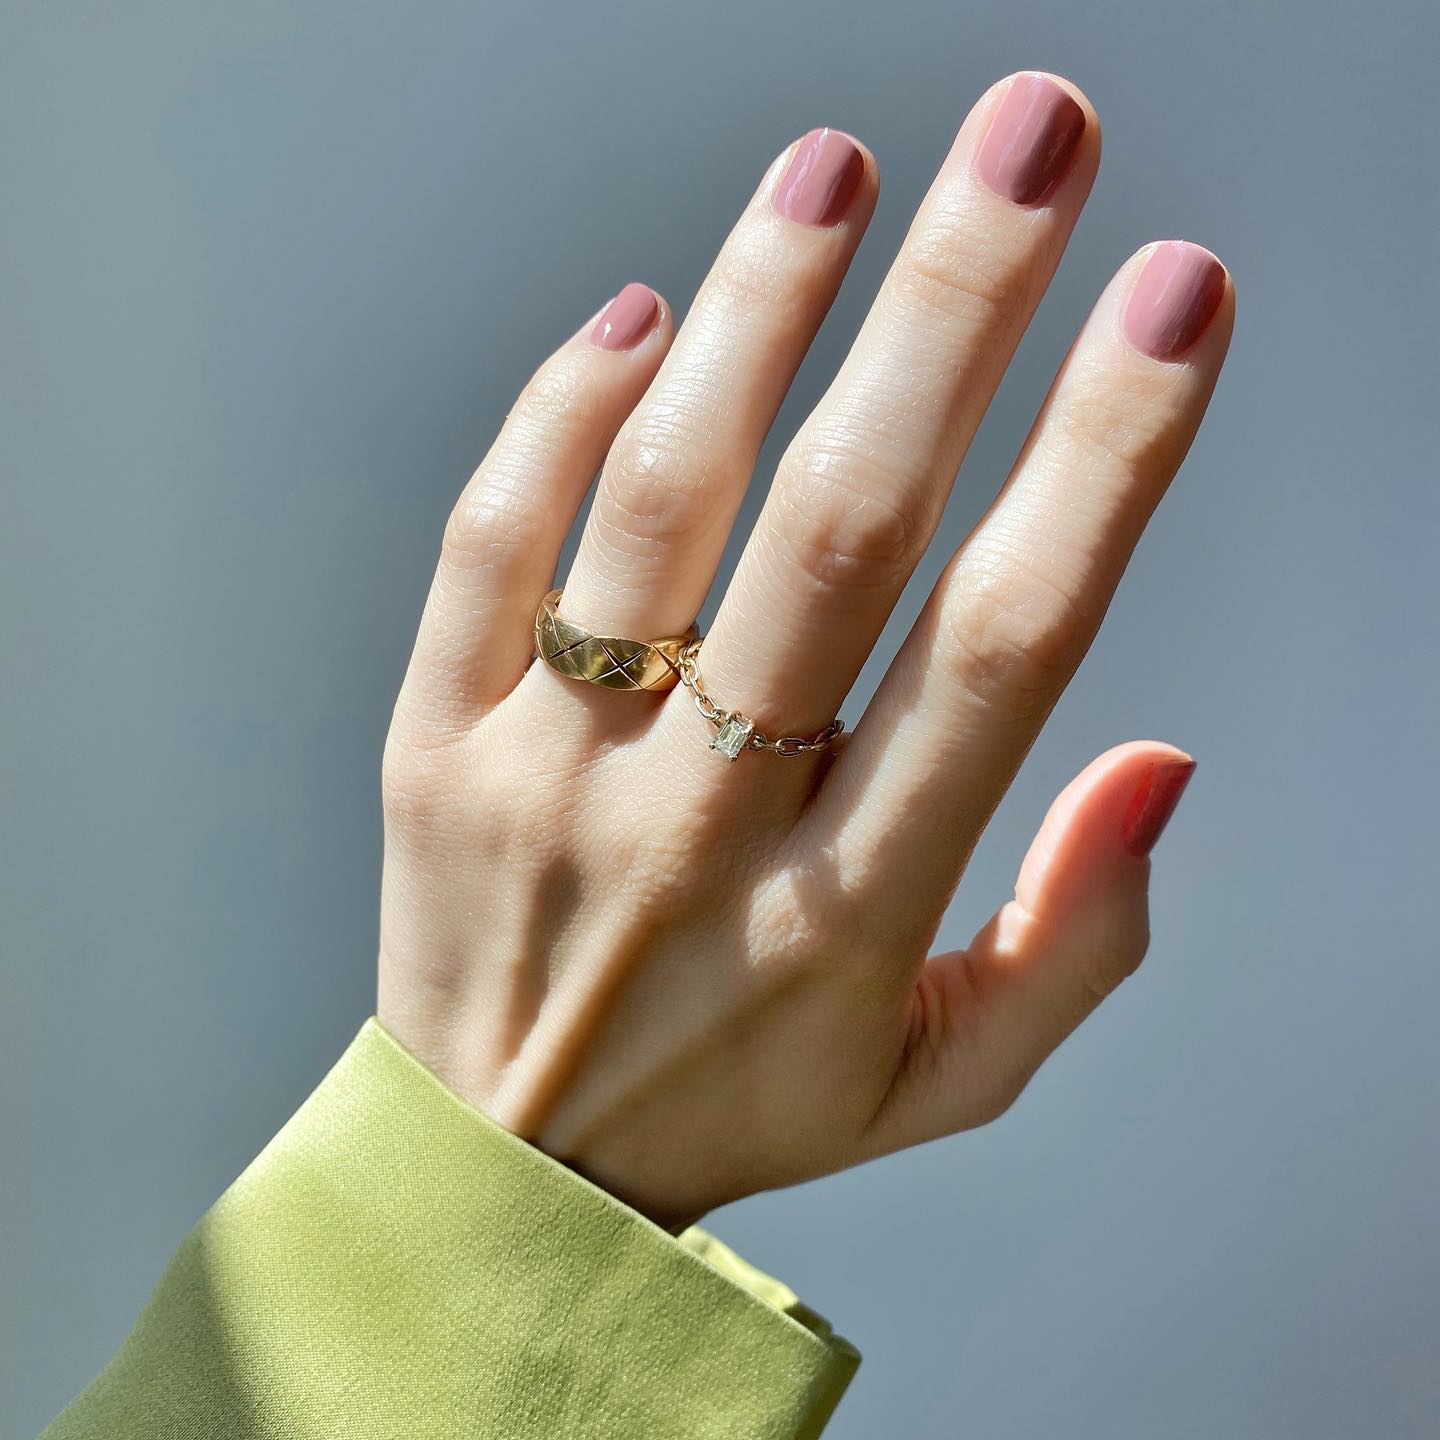 Imagen de una mano con una manicura en color nude y anillos en dorado